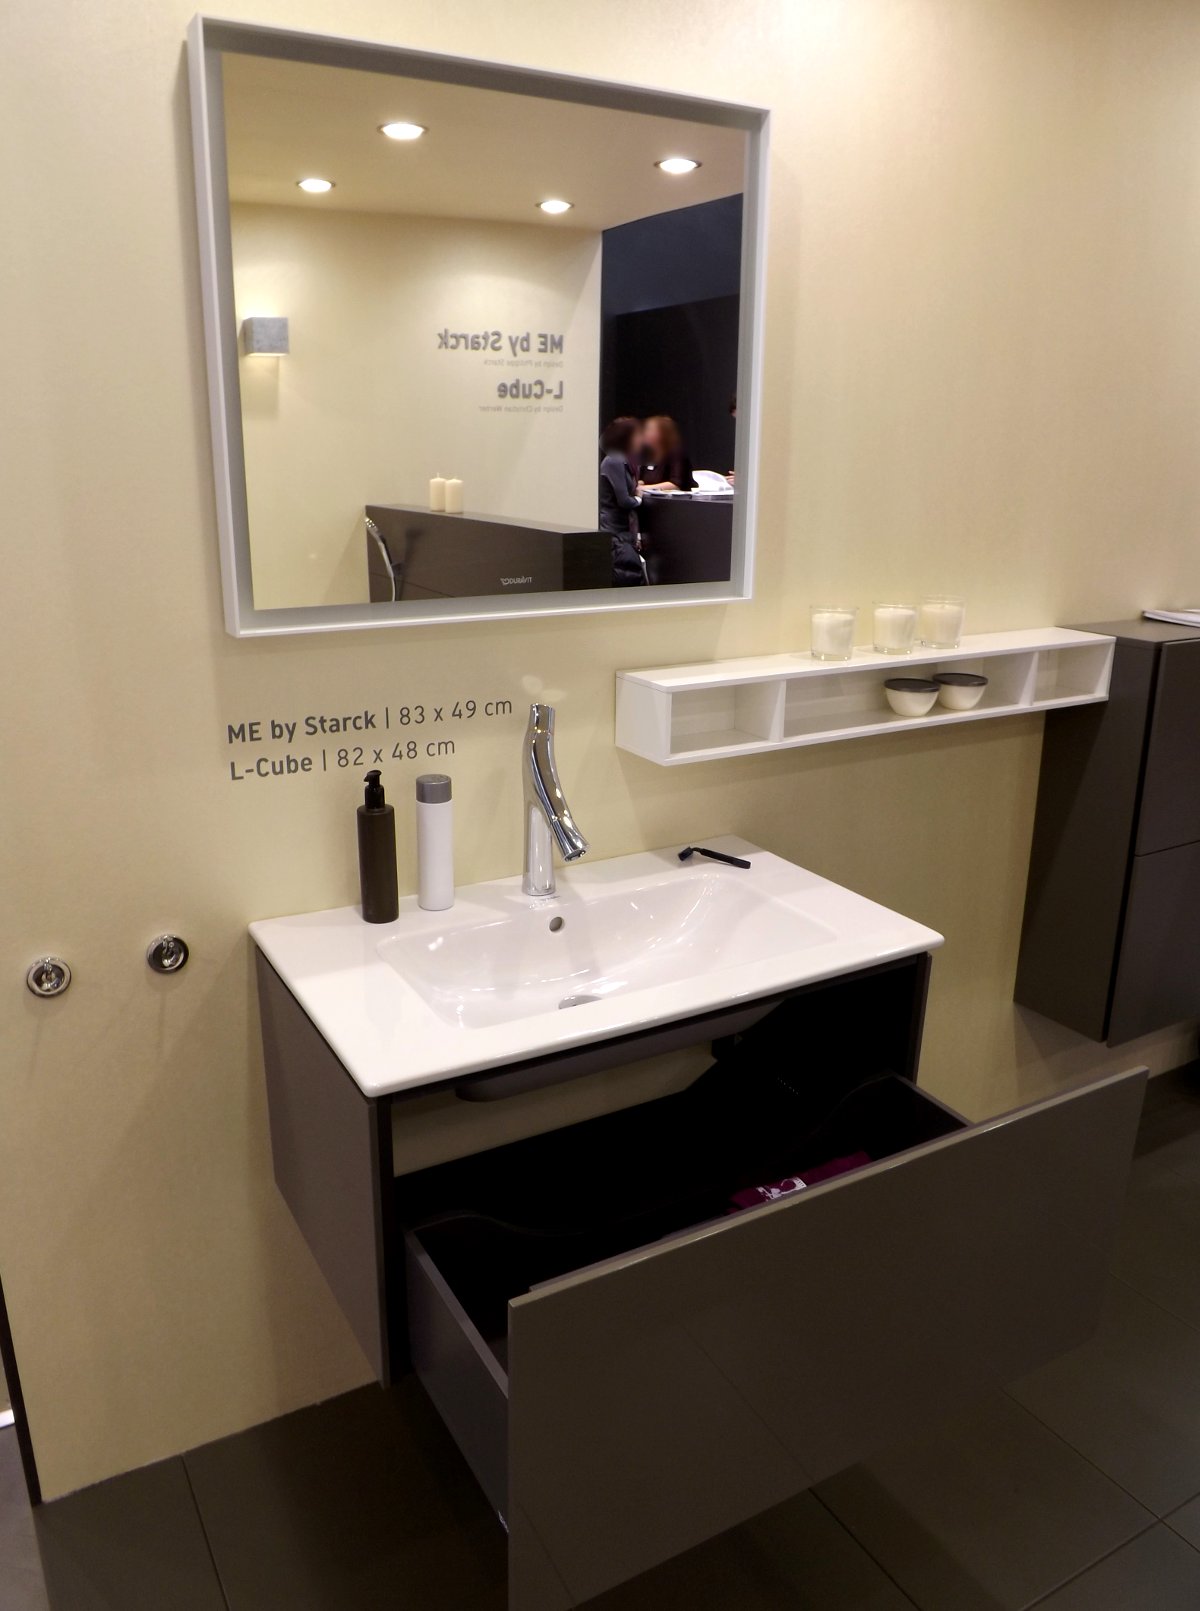 Мебель для ванной и зеркало L-Cube с раковиной ME by Starck от Duravit на выставке МосБилд 2015